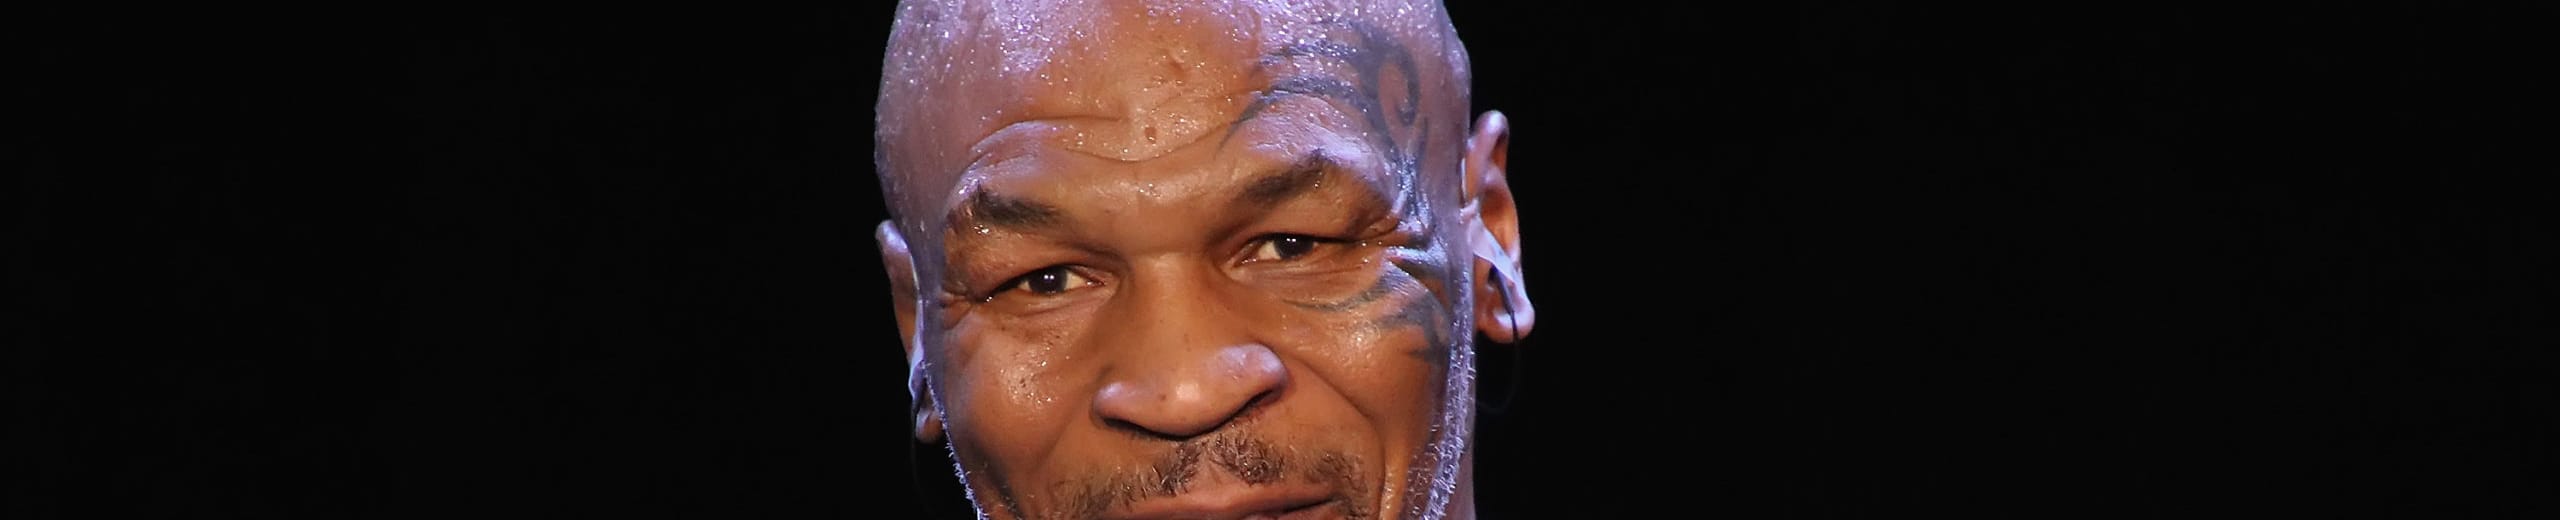 Mike Tyson torna sul ring: quando i campioni riallacciano i guantoni